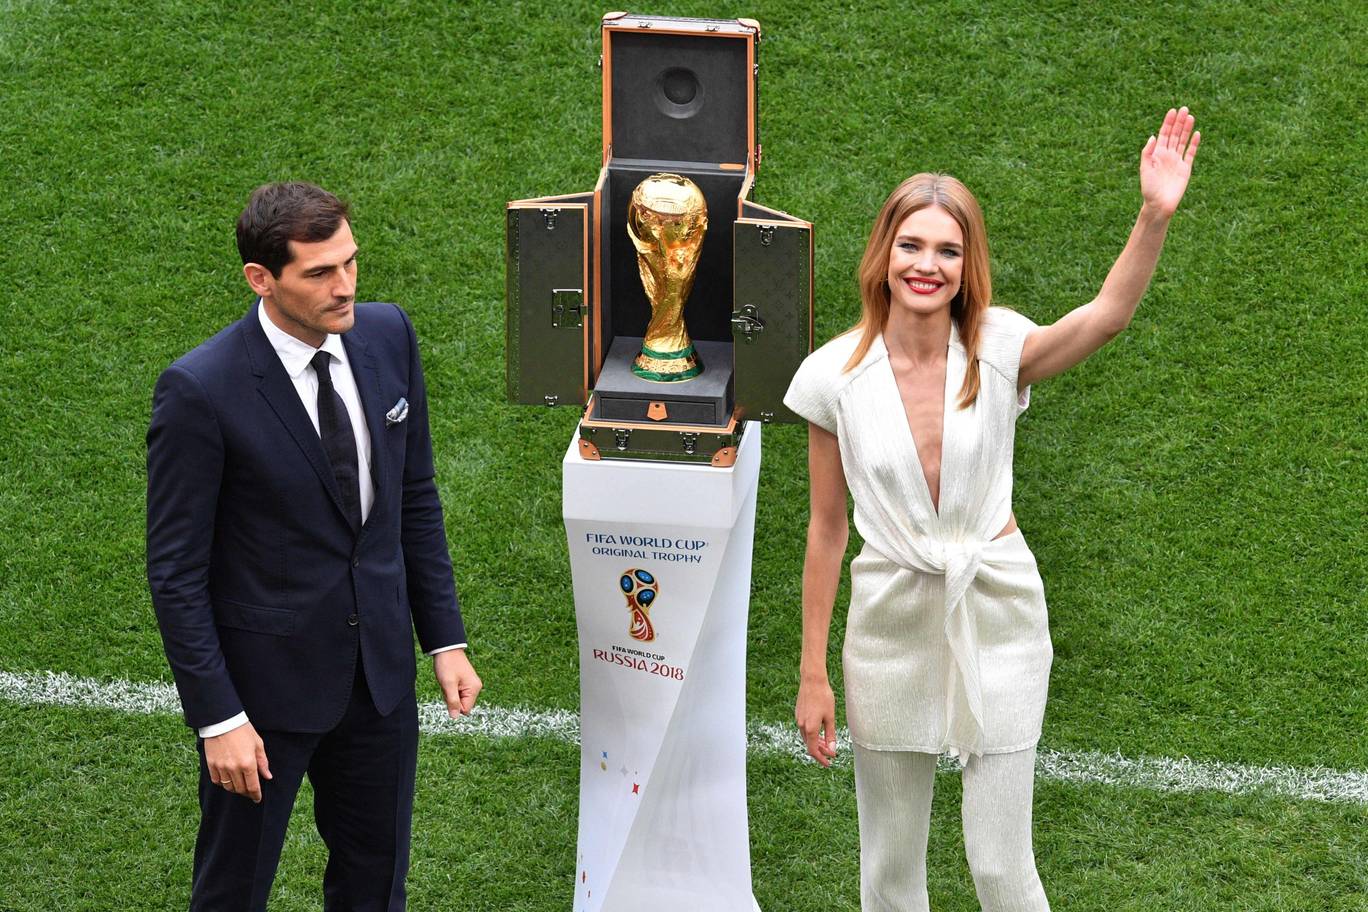 Cựu thủ quân của Tây Ban Nha Iker Casillas và siêu mẫu Natalia Vodianova được vinh dự mang chiếc cúp vàng thế giới ra sân vận động Luzhniki. Đáng chú ý là bên cạnh cúp vàng còn có chiếc hộp đặc biệt được thương hiệu thời trang nổi tiếng thiết kế riêng cho cúp năm nay. Đây là lần thứ hai hãng thời gian hợp tác với FIFA trong việc kết hợp thời trang cao cấp với thể thao.